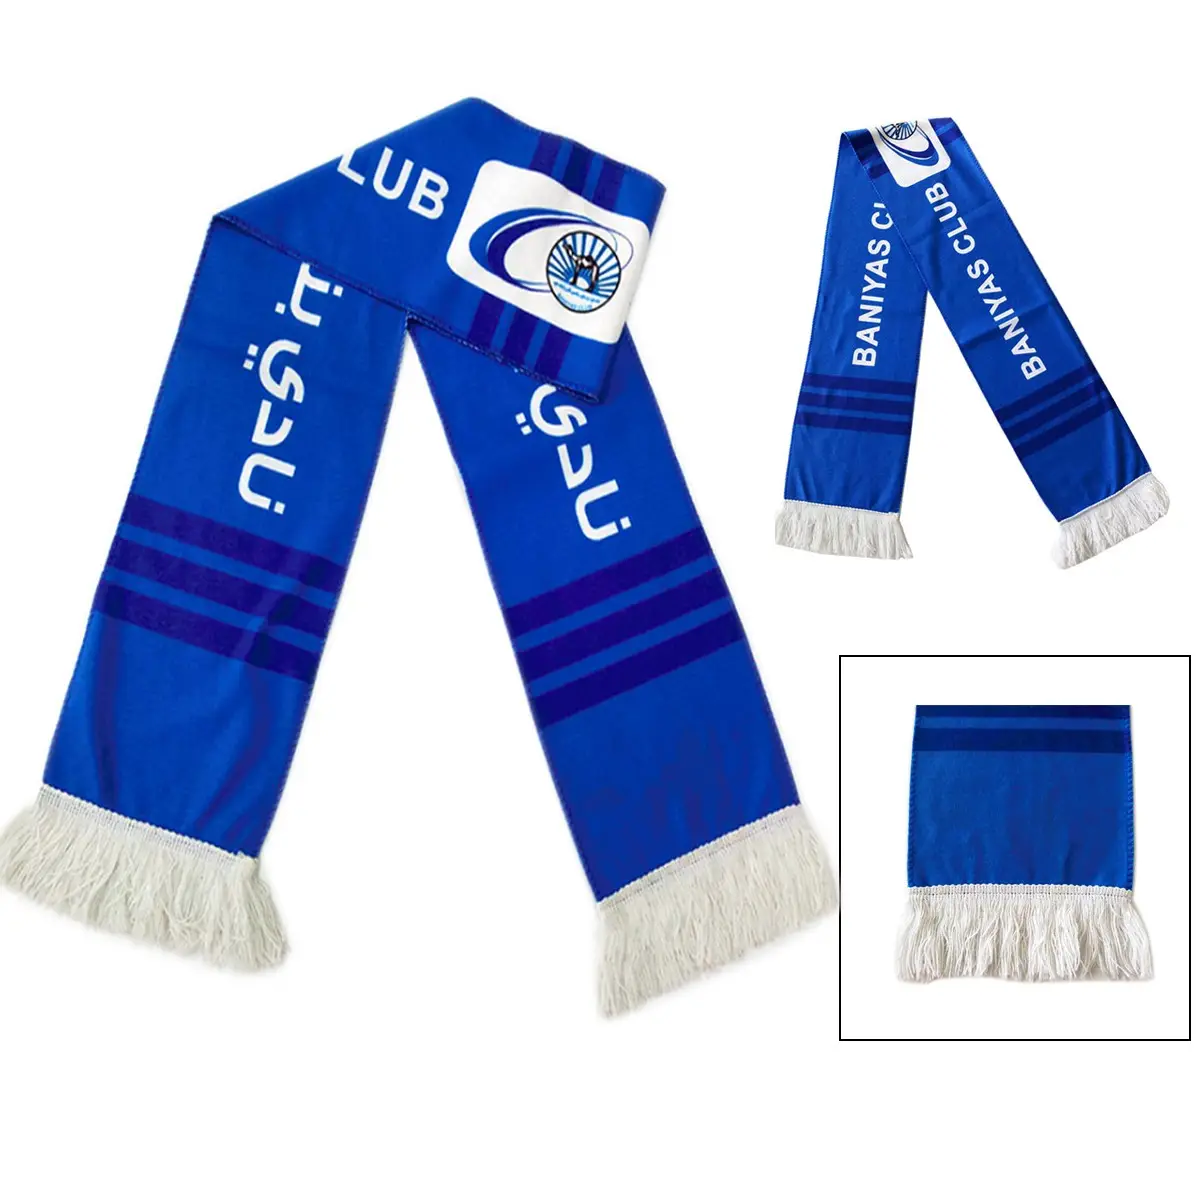 Bufanda personalizada de poliéster de buena calidad para eventos de fútbol, bufanda unisex para hombre, bufanda para aficionados al deporte de fútbol